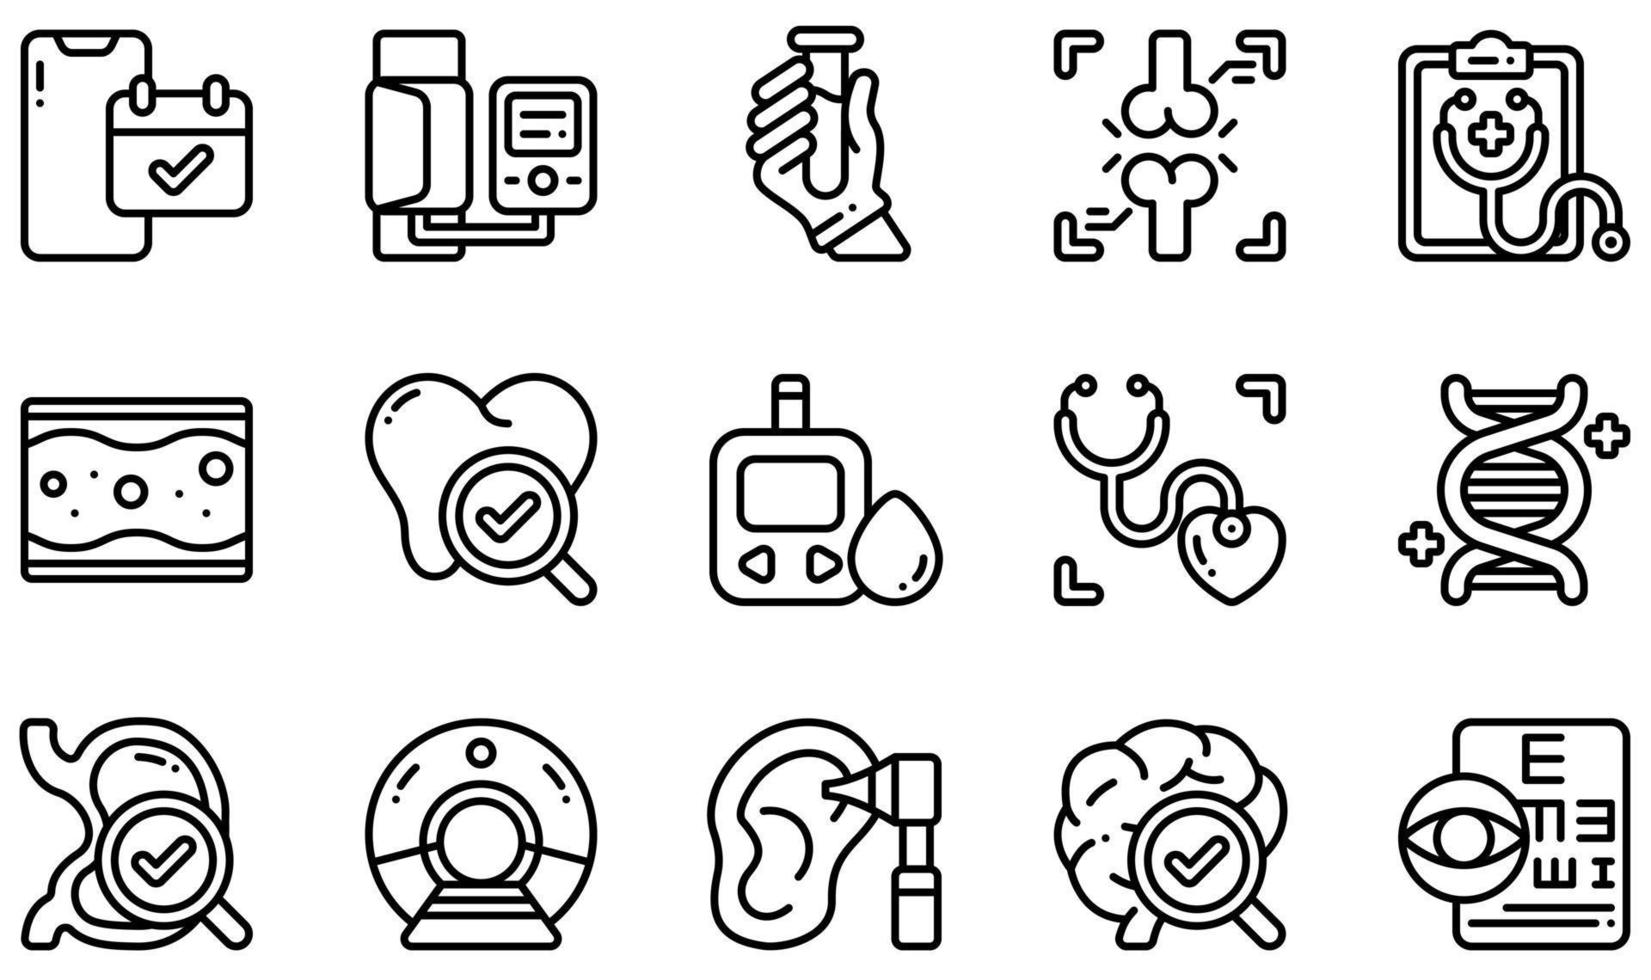 ensemble d'icônes vectorielles liées au bilan de santé. contient des icônes telles que rendez-vous, tension artérielle, test sanguin, bilan de santé, bilan cardiaque, examen de la vue, etc. vecteur